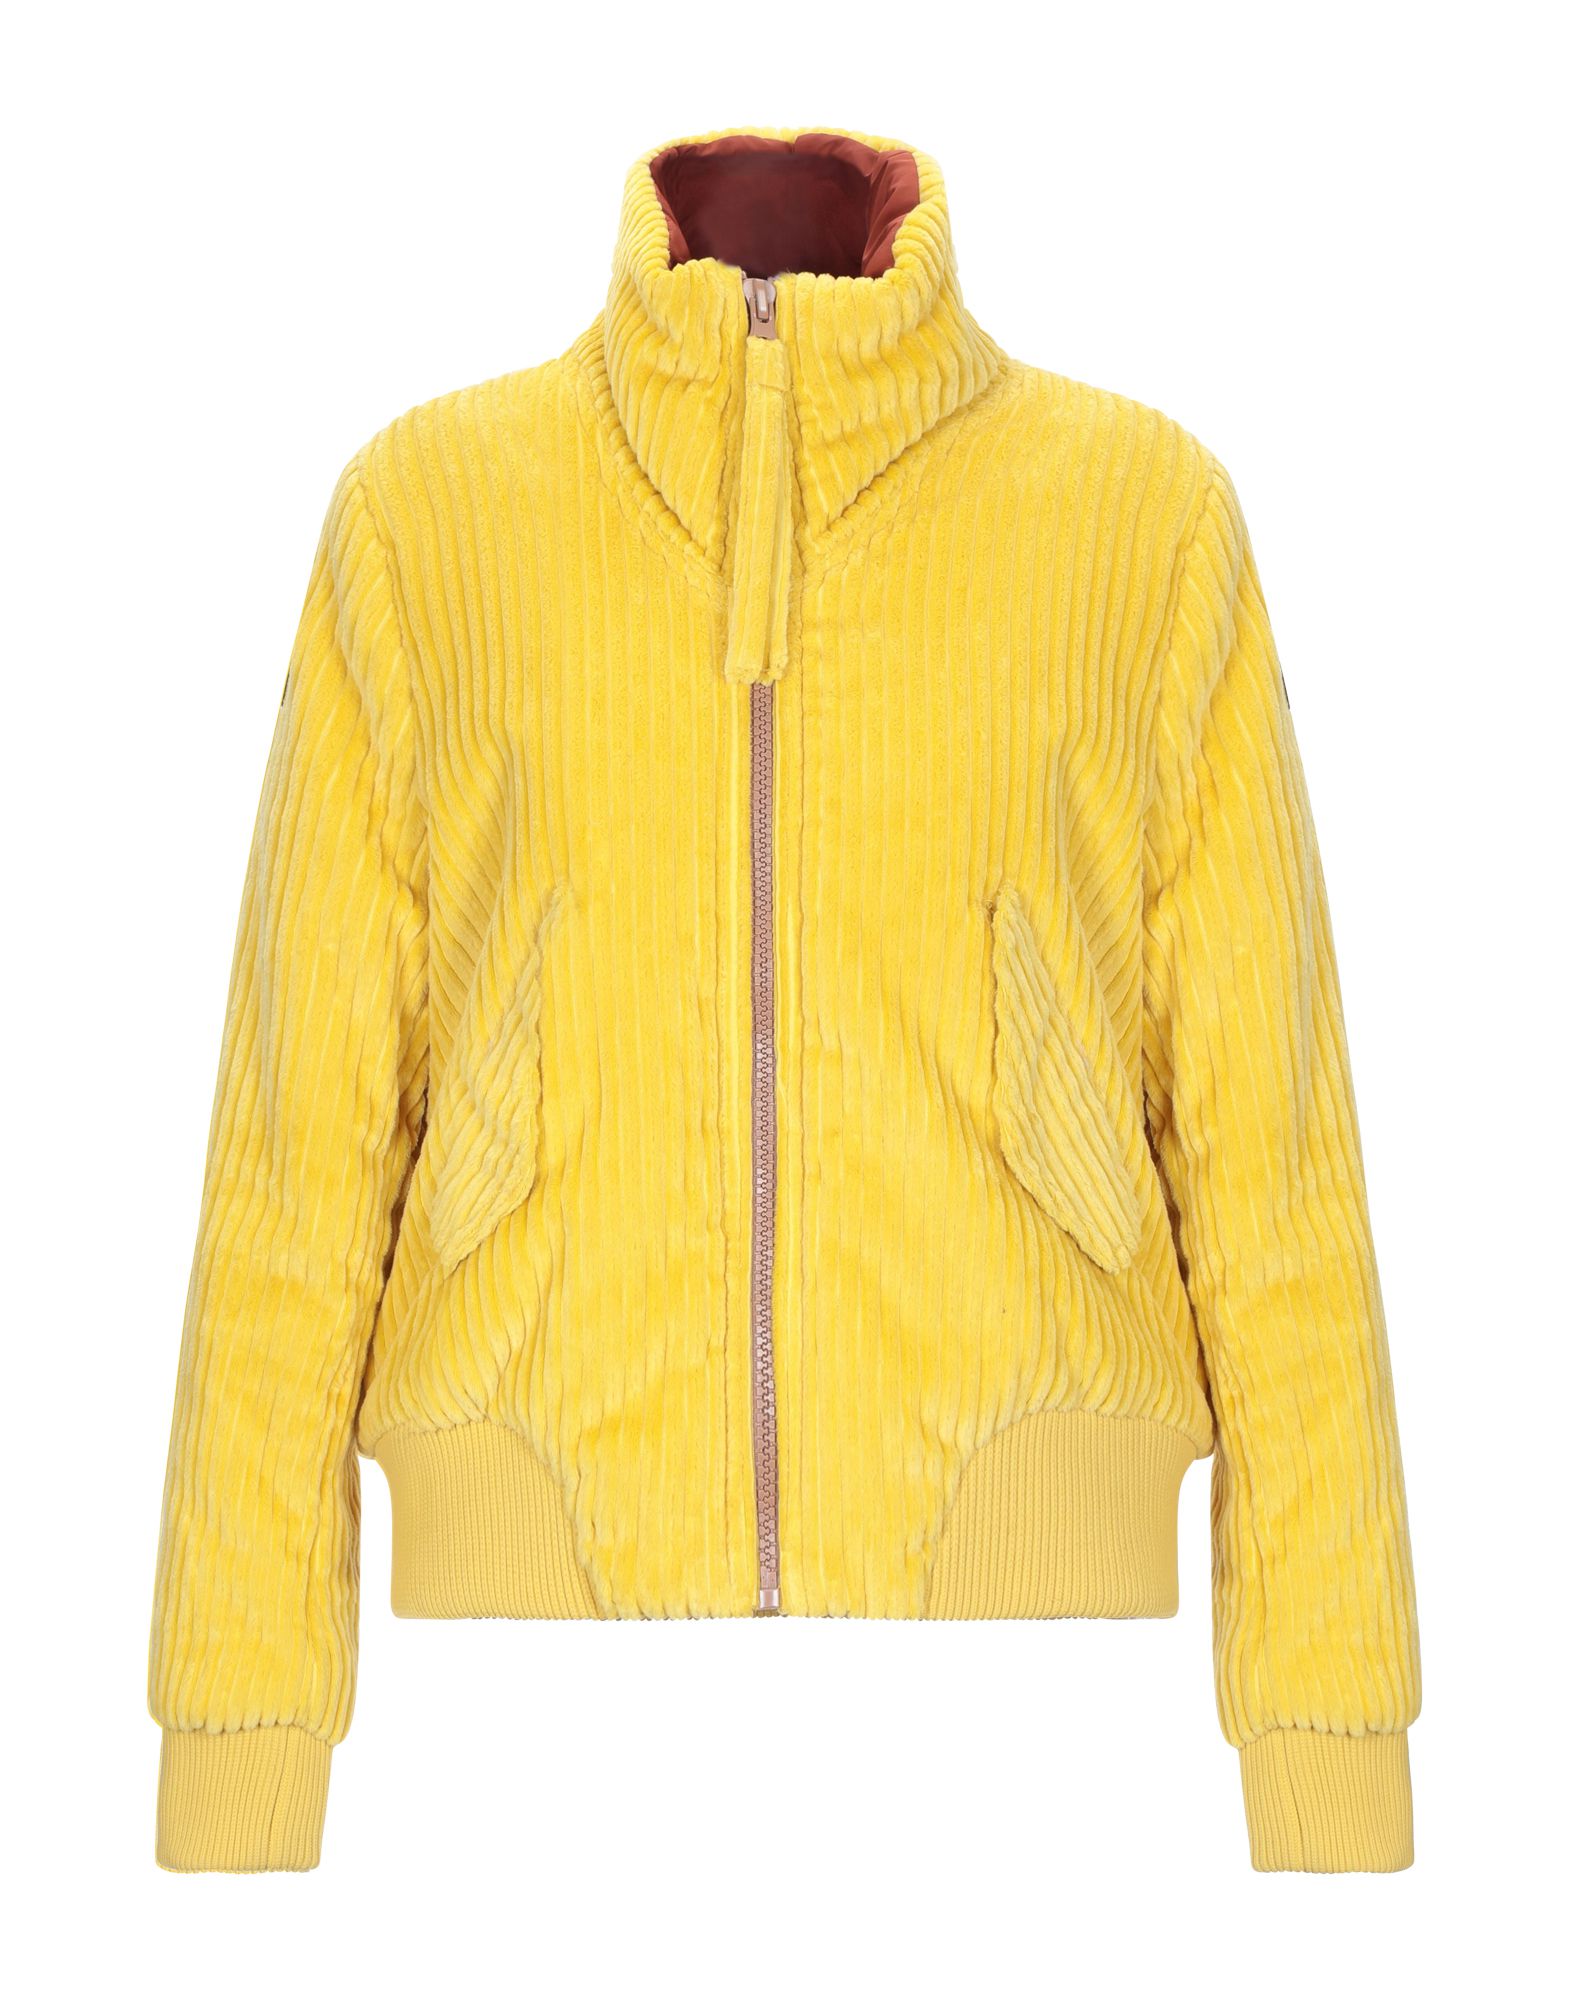 Куртка  - Бежевый,Желтый цвет